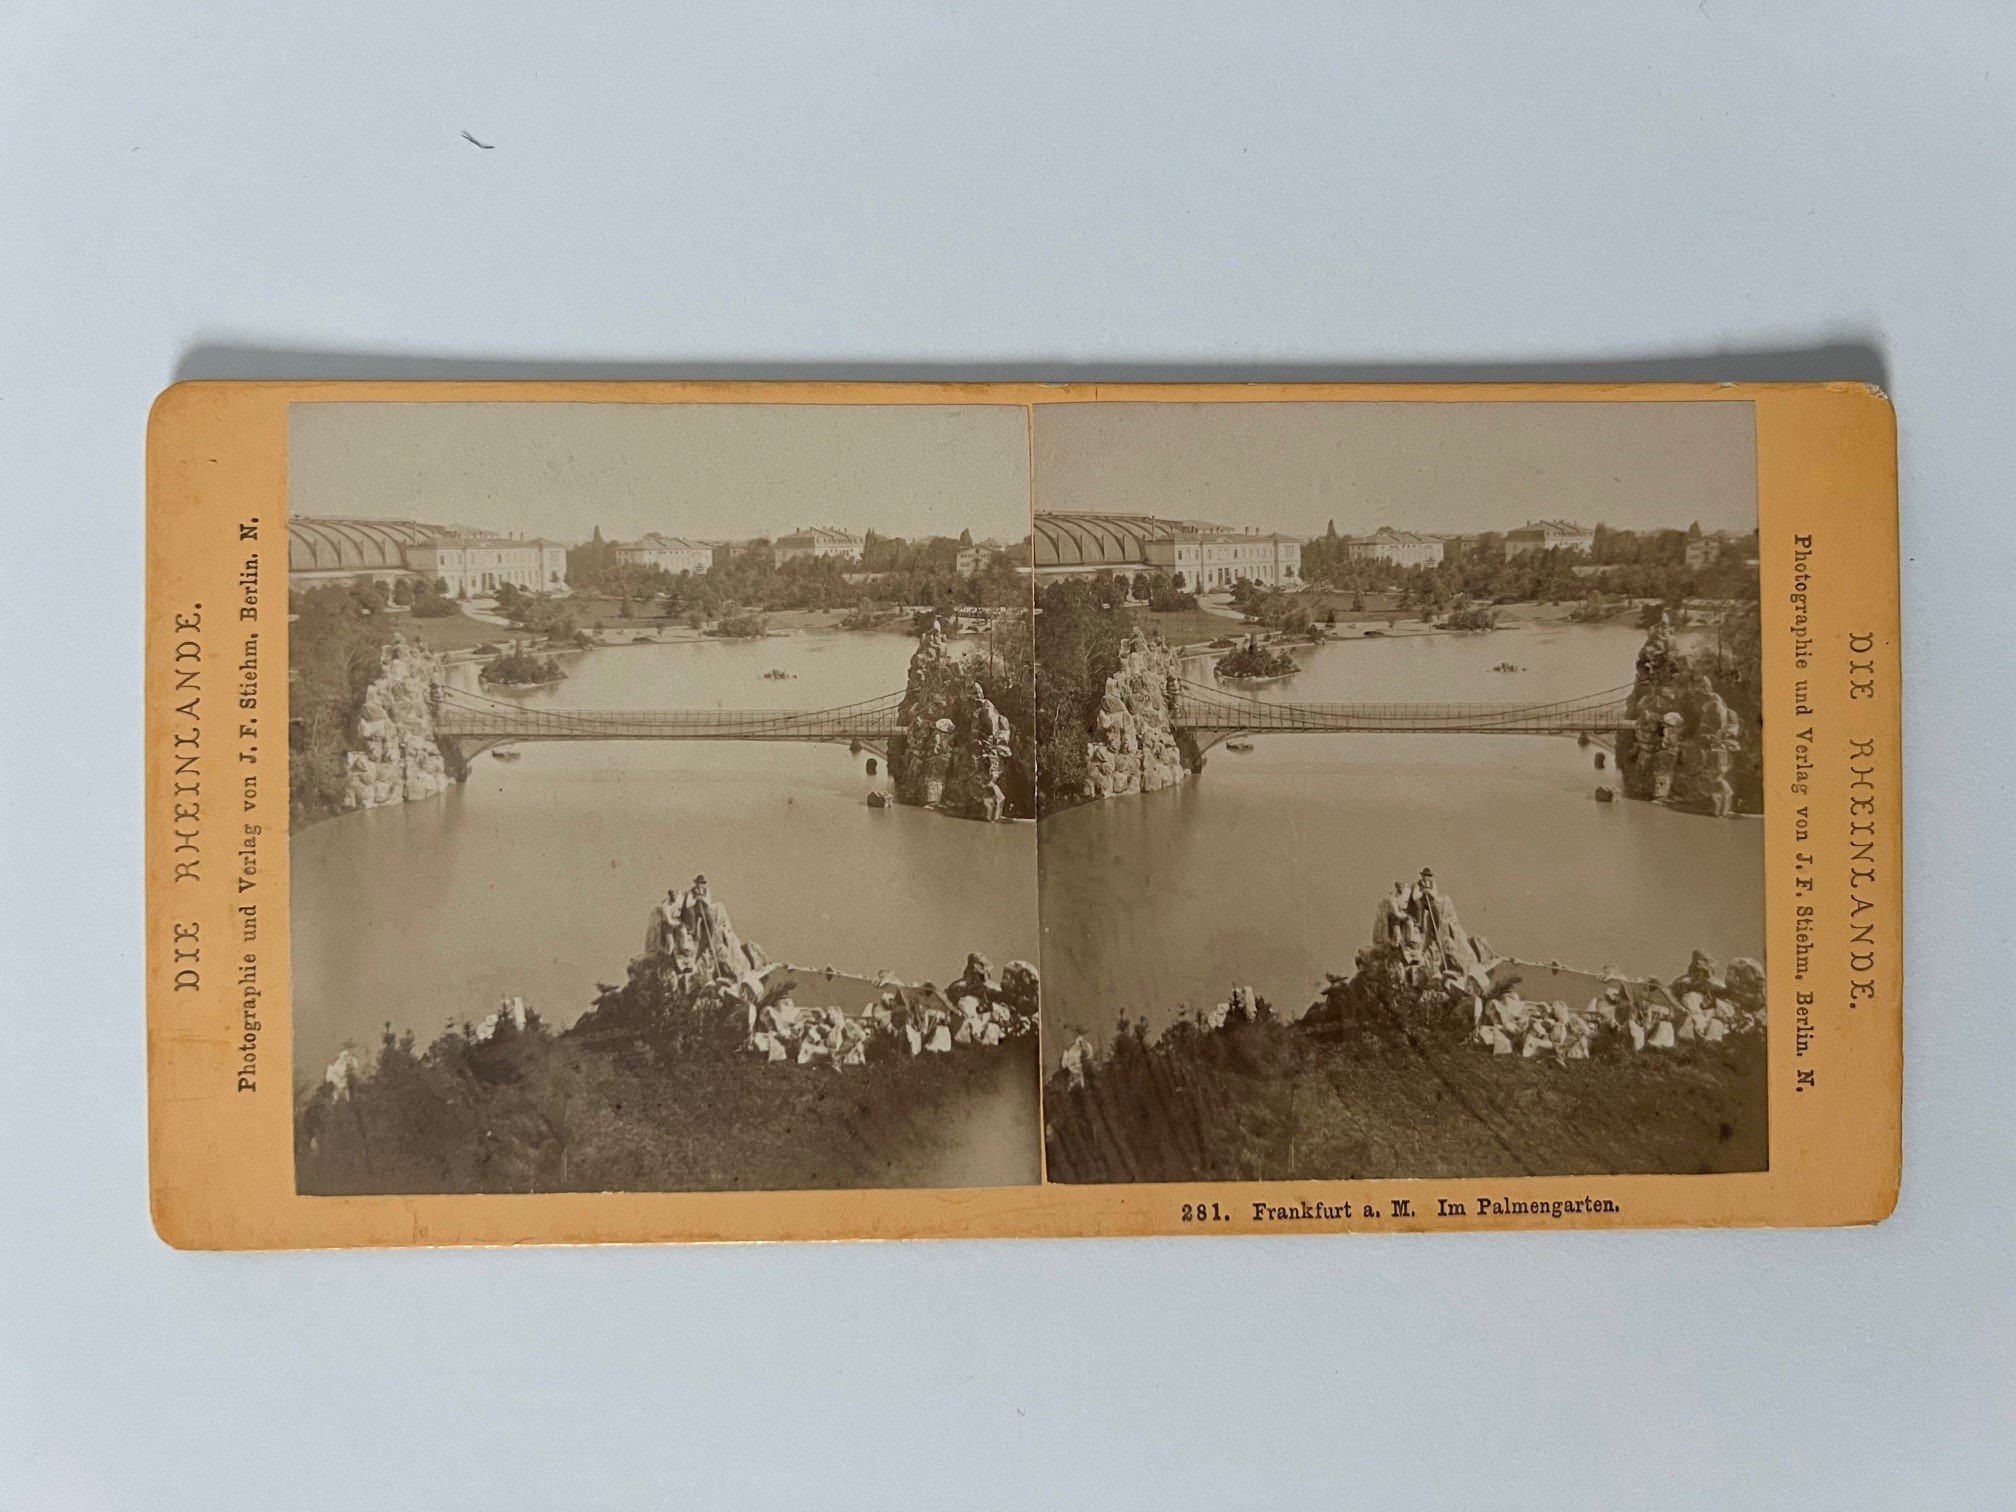 Stereobild, Johann Friedrich Stiehm, Frankfurt, Nr. 181, Im Palmengarten, ca. 1880. (Taunus-Rhein-Main - Regionalgeschichtliche Sammlung Dr. Stefan Naas CC BY-NC-SA)